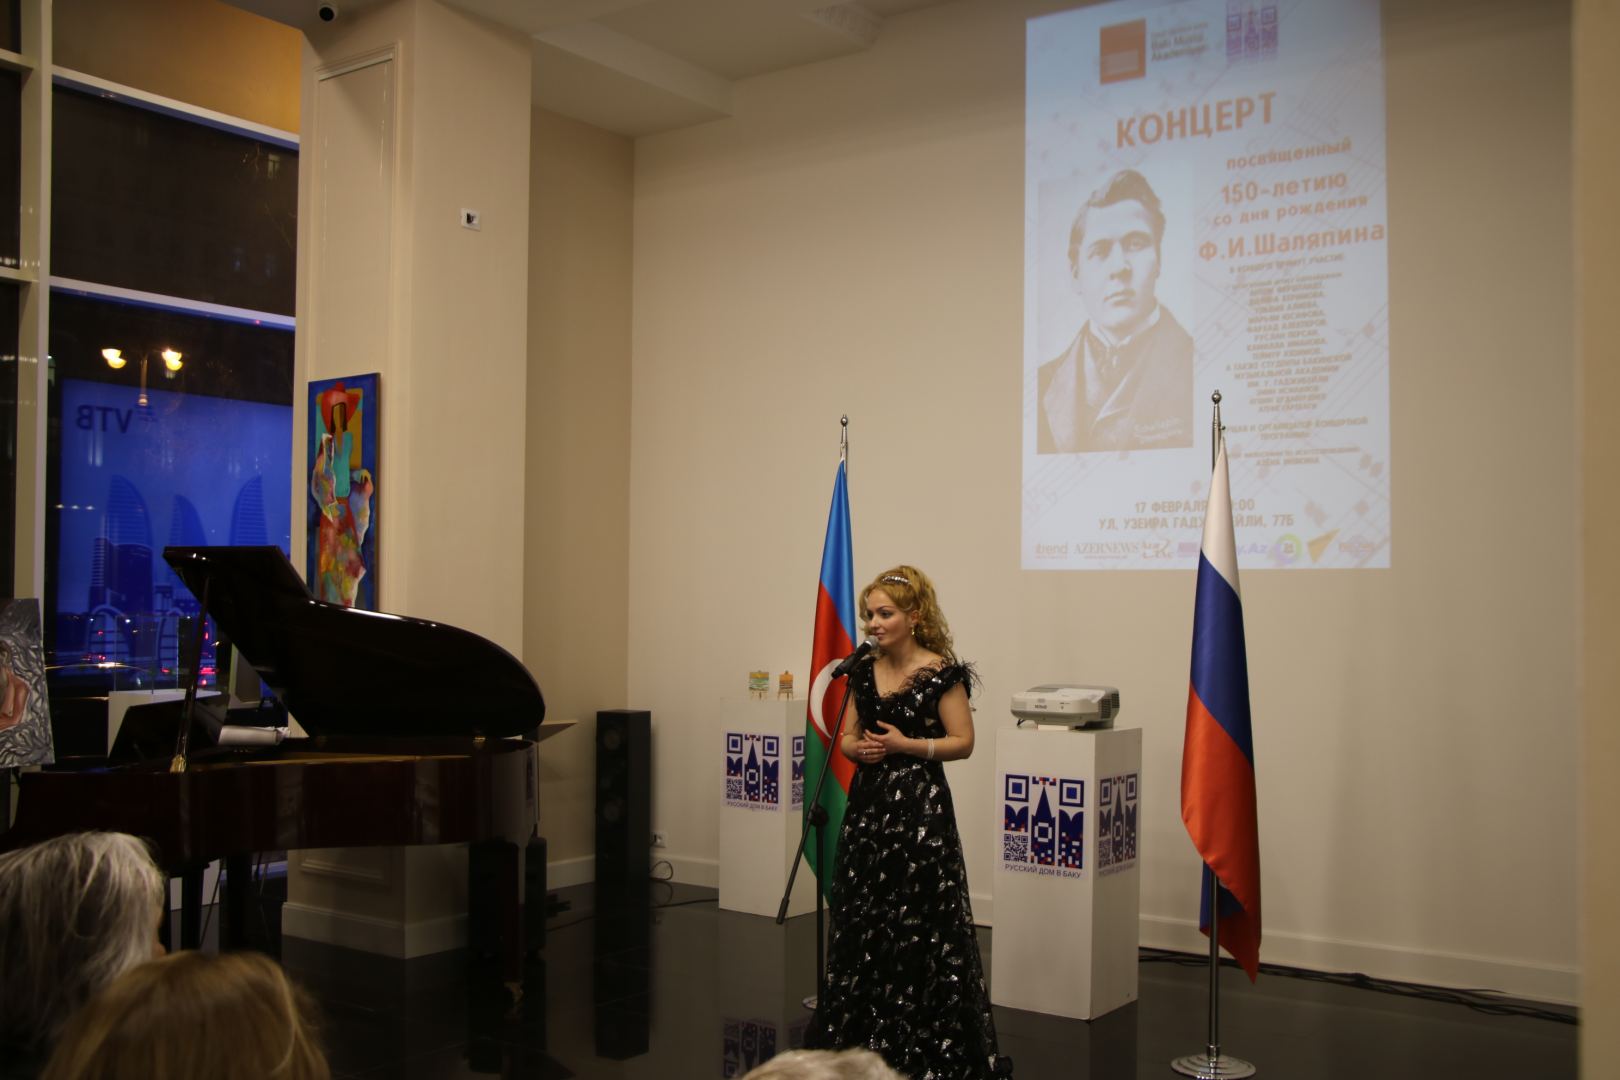 В Баку прошел концерт, посвященный 150-летию Федора Шаляпина (ФОТО/ВИДЕО)